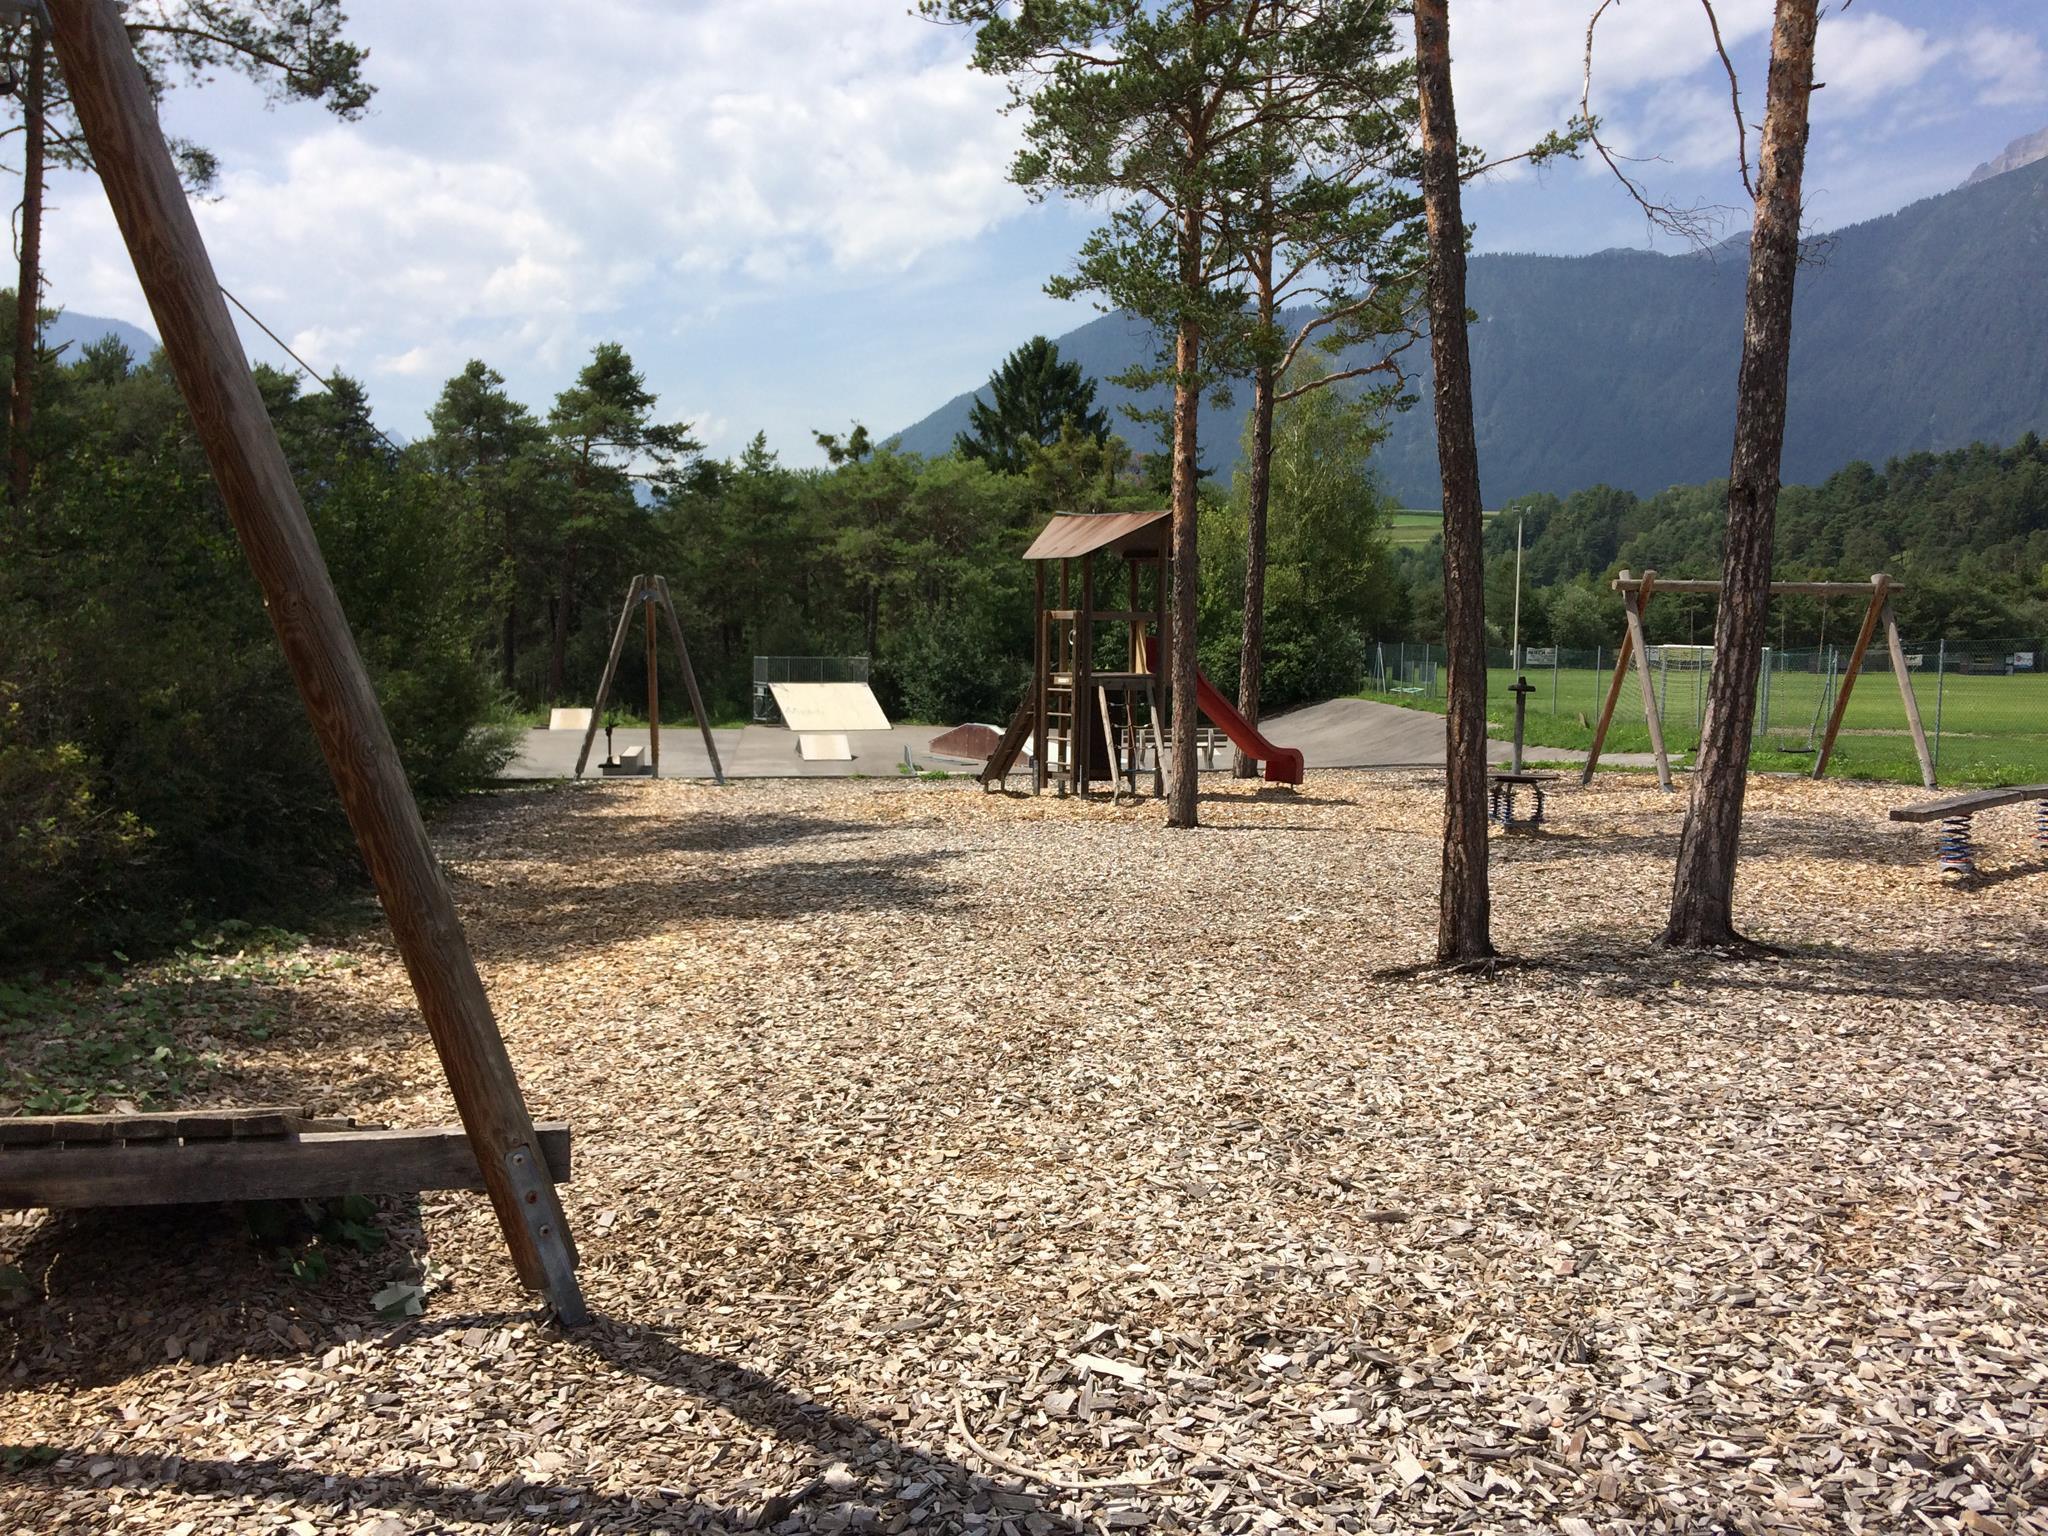 Kinderspielpatz in Untermieming/Weidach beim Fußballplatz